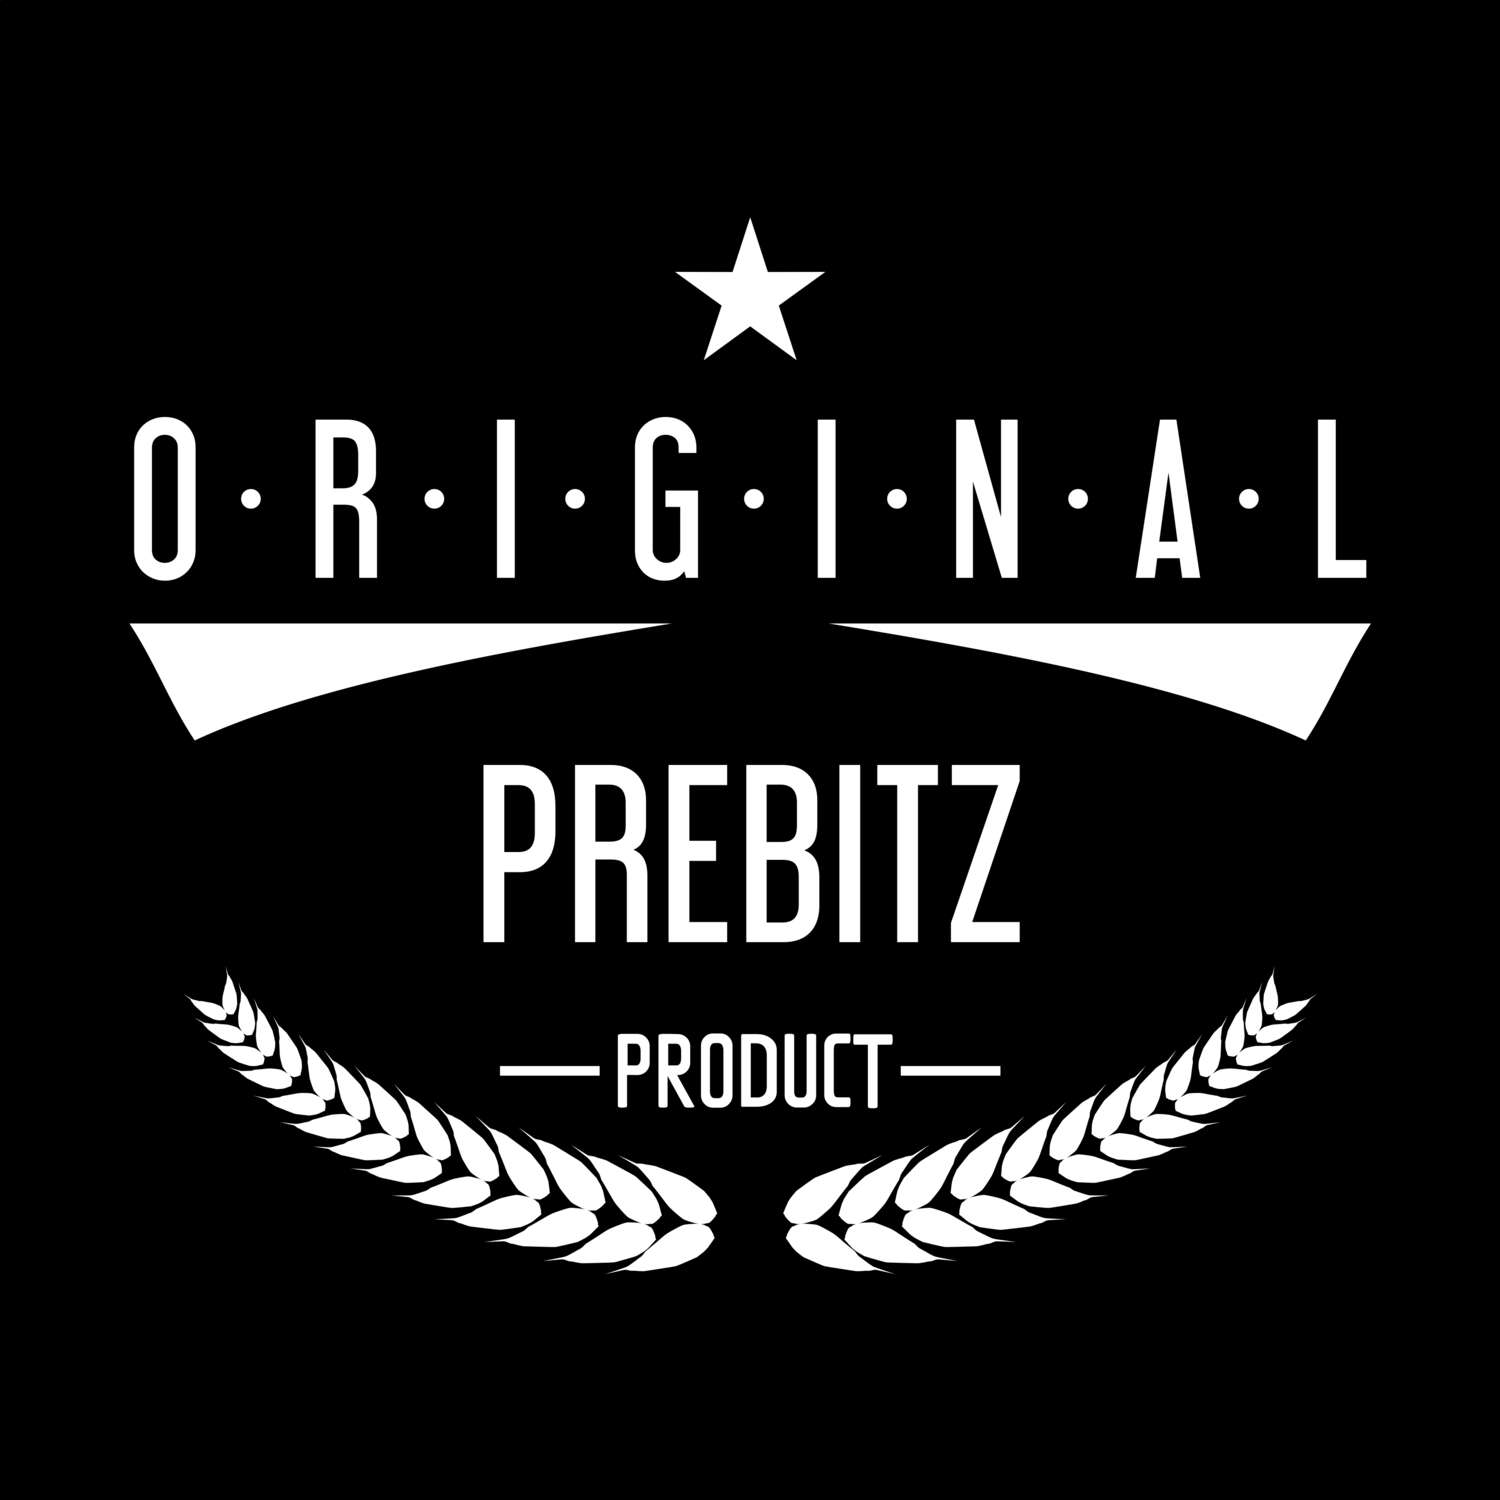 Prebitz T-Shirt »Original Product«